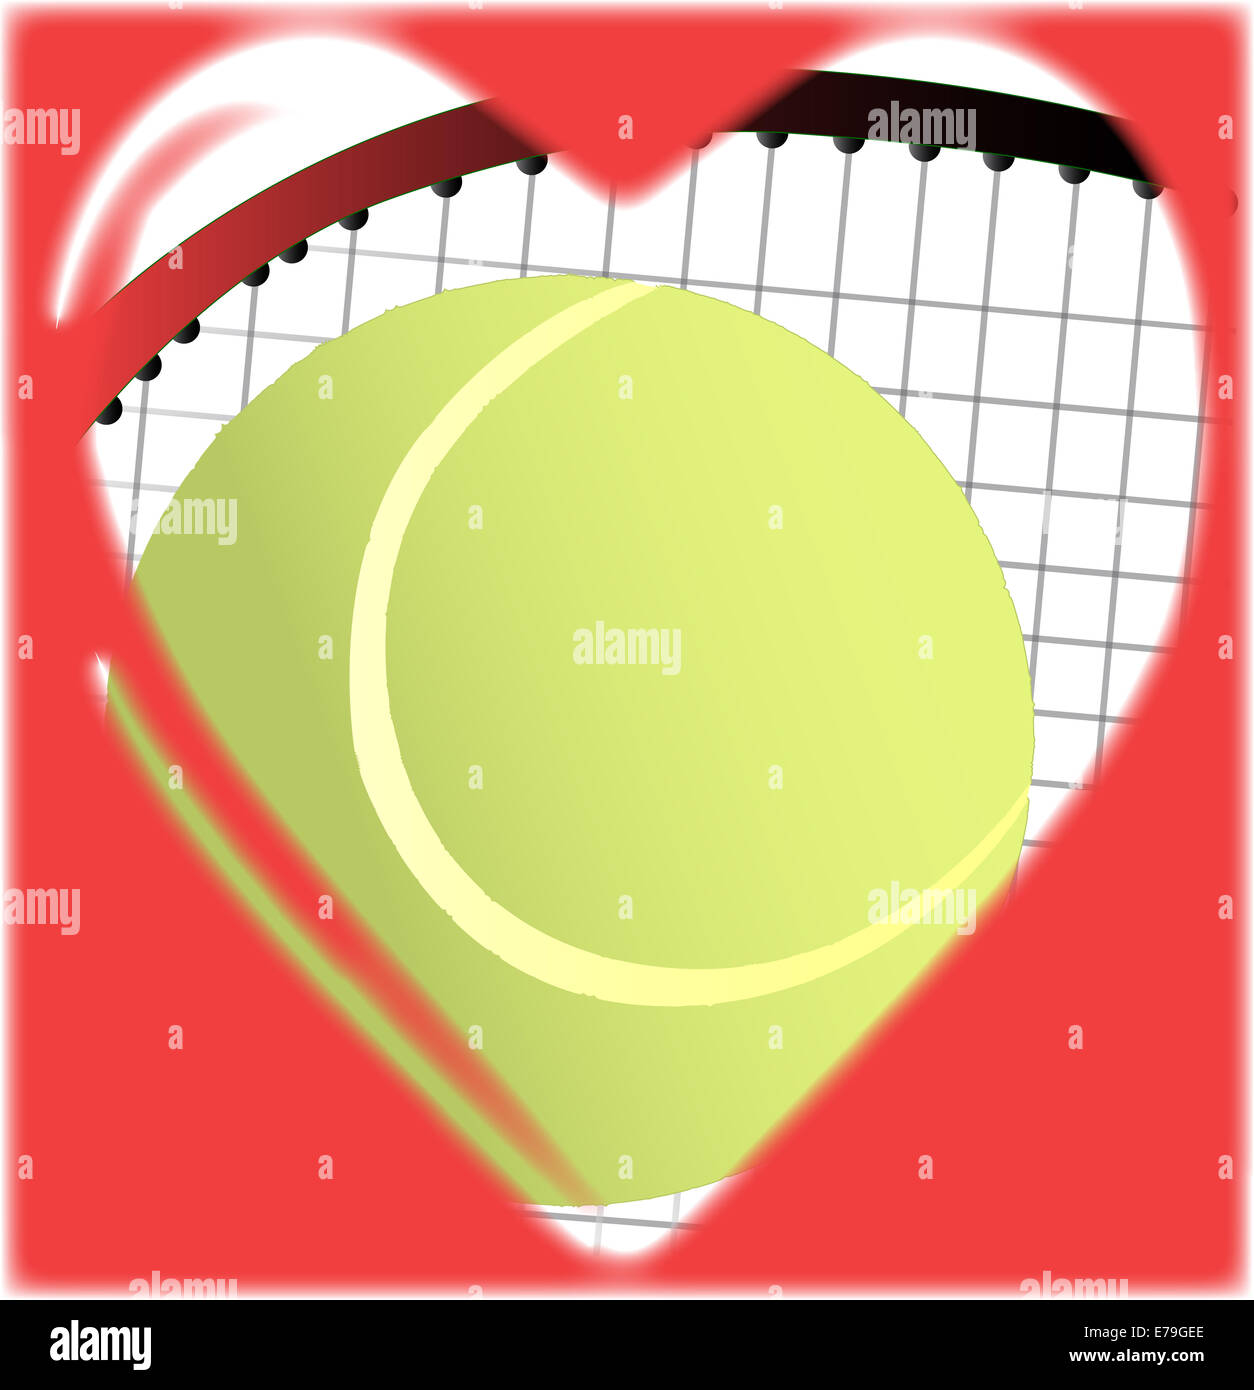 Una pelota de tenis y raqueta en una caricatura tradicional con forma de corazón Foto de stock